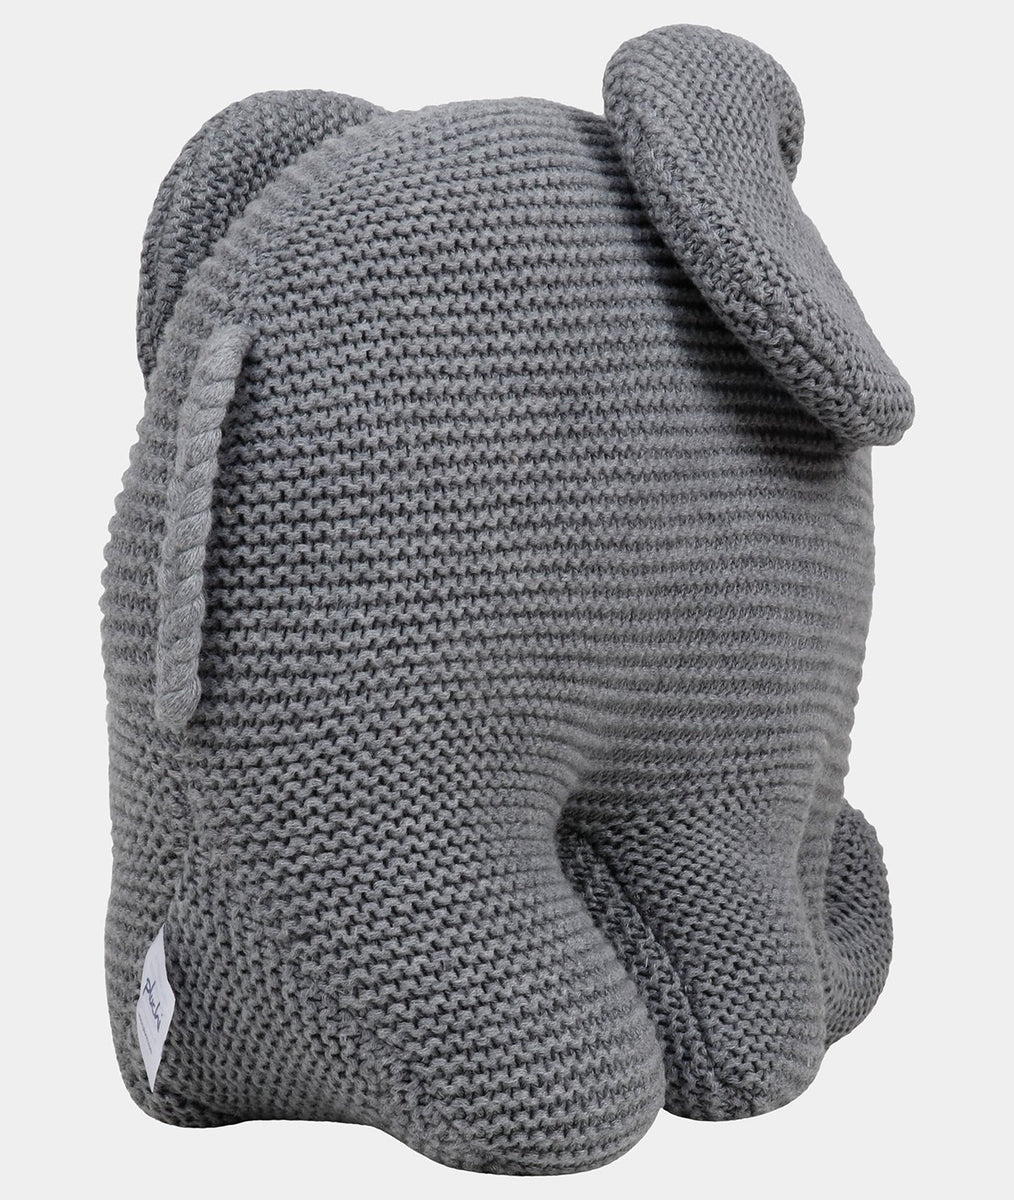 Elephant Cuddle Cloth-Gry-14Sq